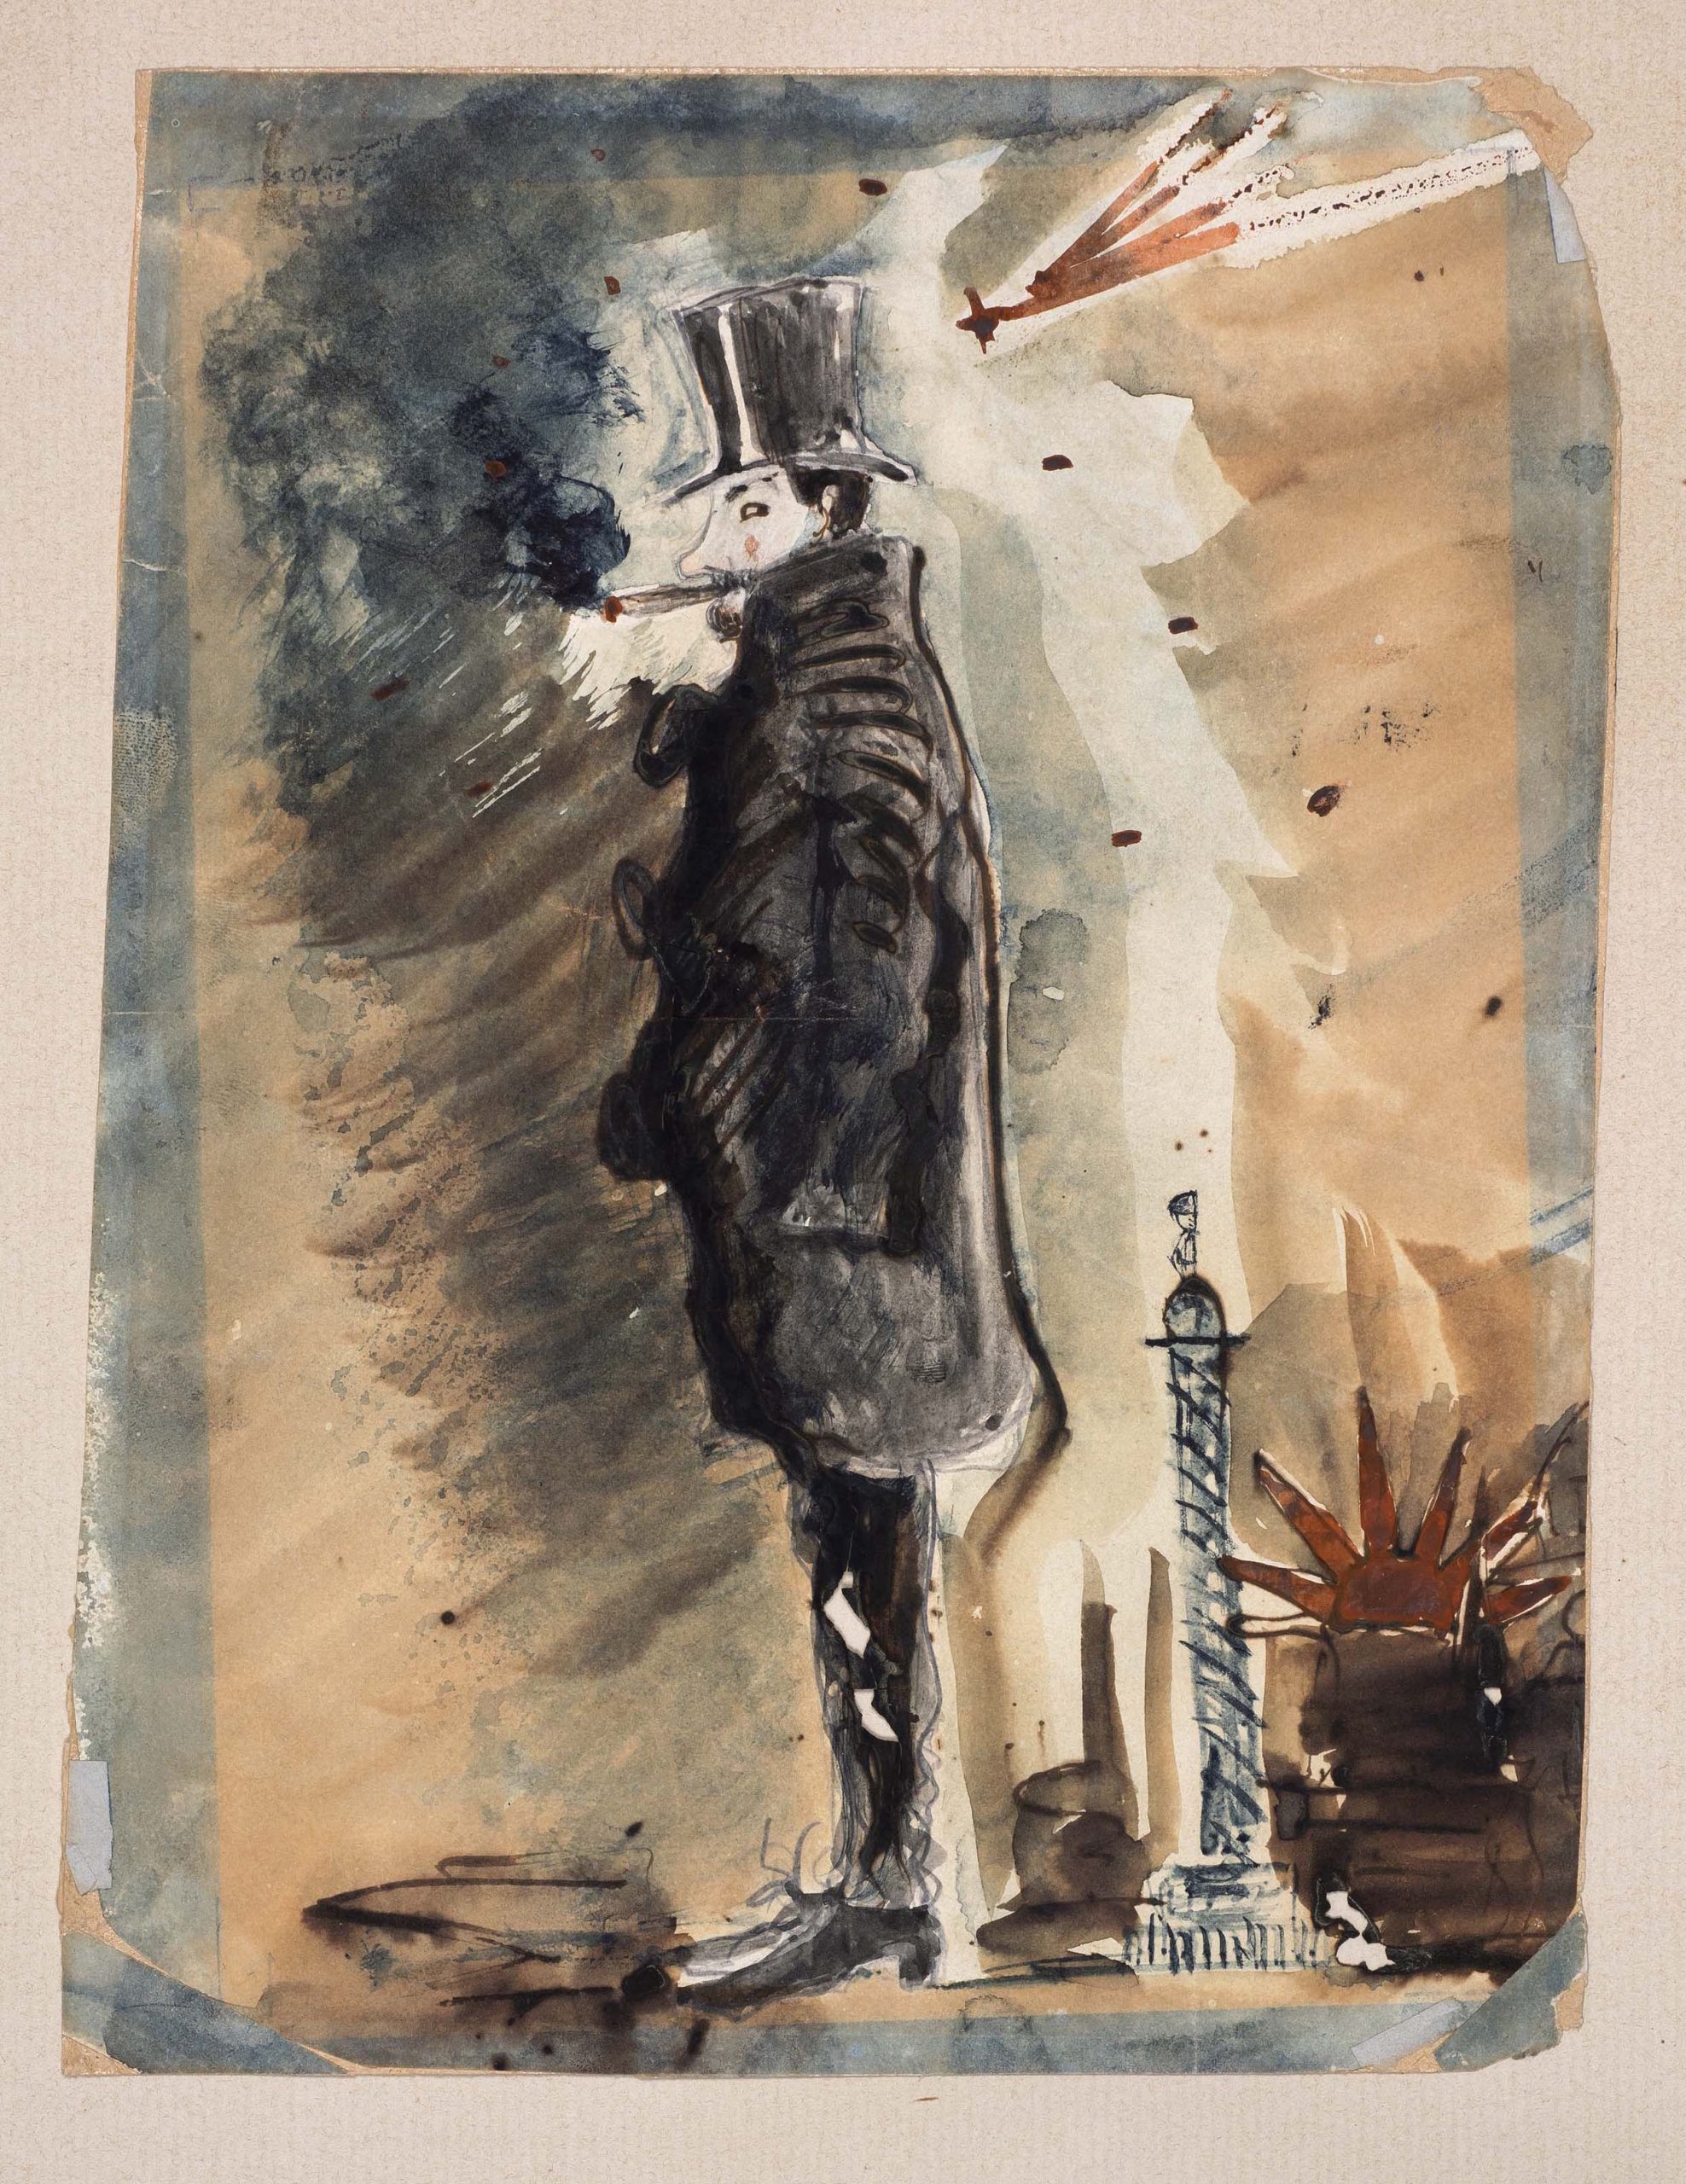 Charles Baudelaire, "Autoportrait sous l'influence du haschisch", 1842-1845. Plume et lavis rehaussés de vermillon. Coll. part. © BnF